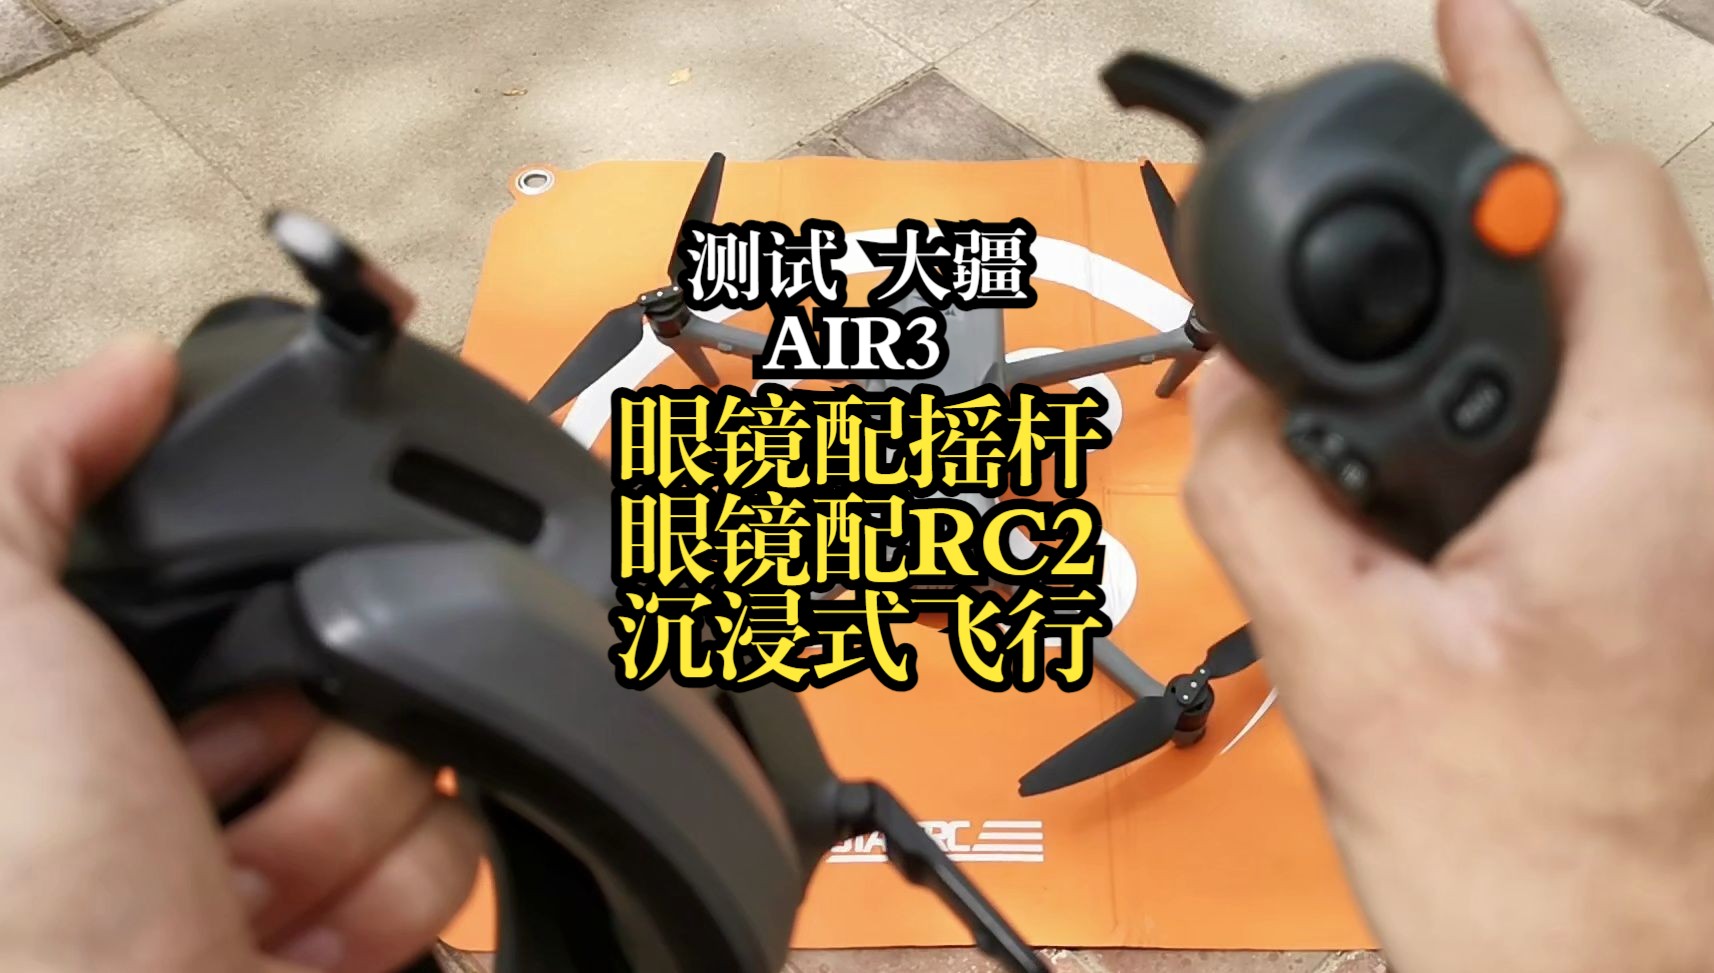 测试大疆AIR3，VR眼镜配摇杆，VR眼镜配RC2沉浸式飞行。